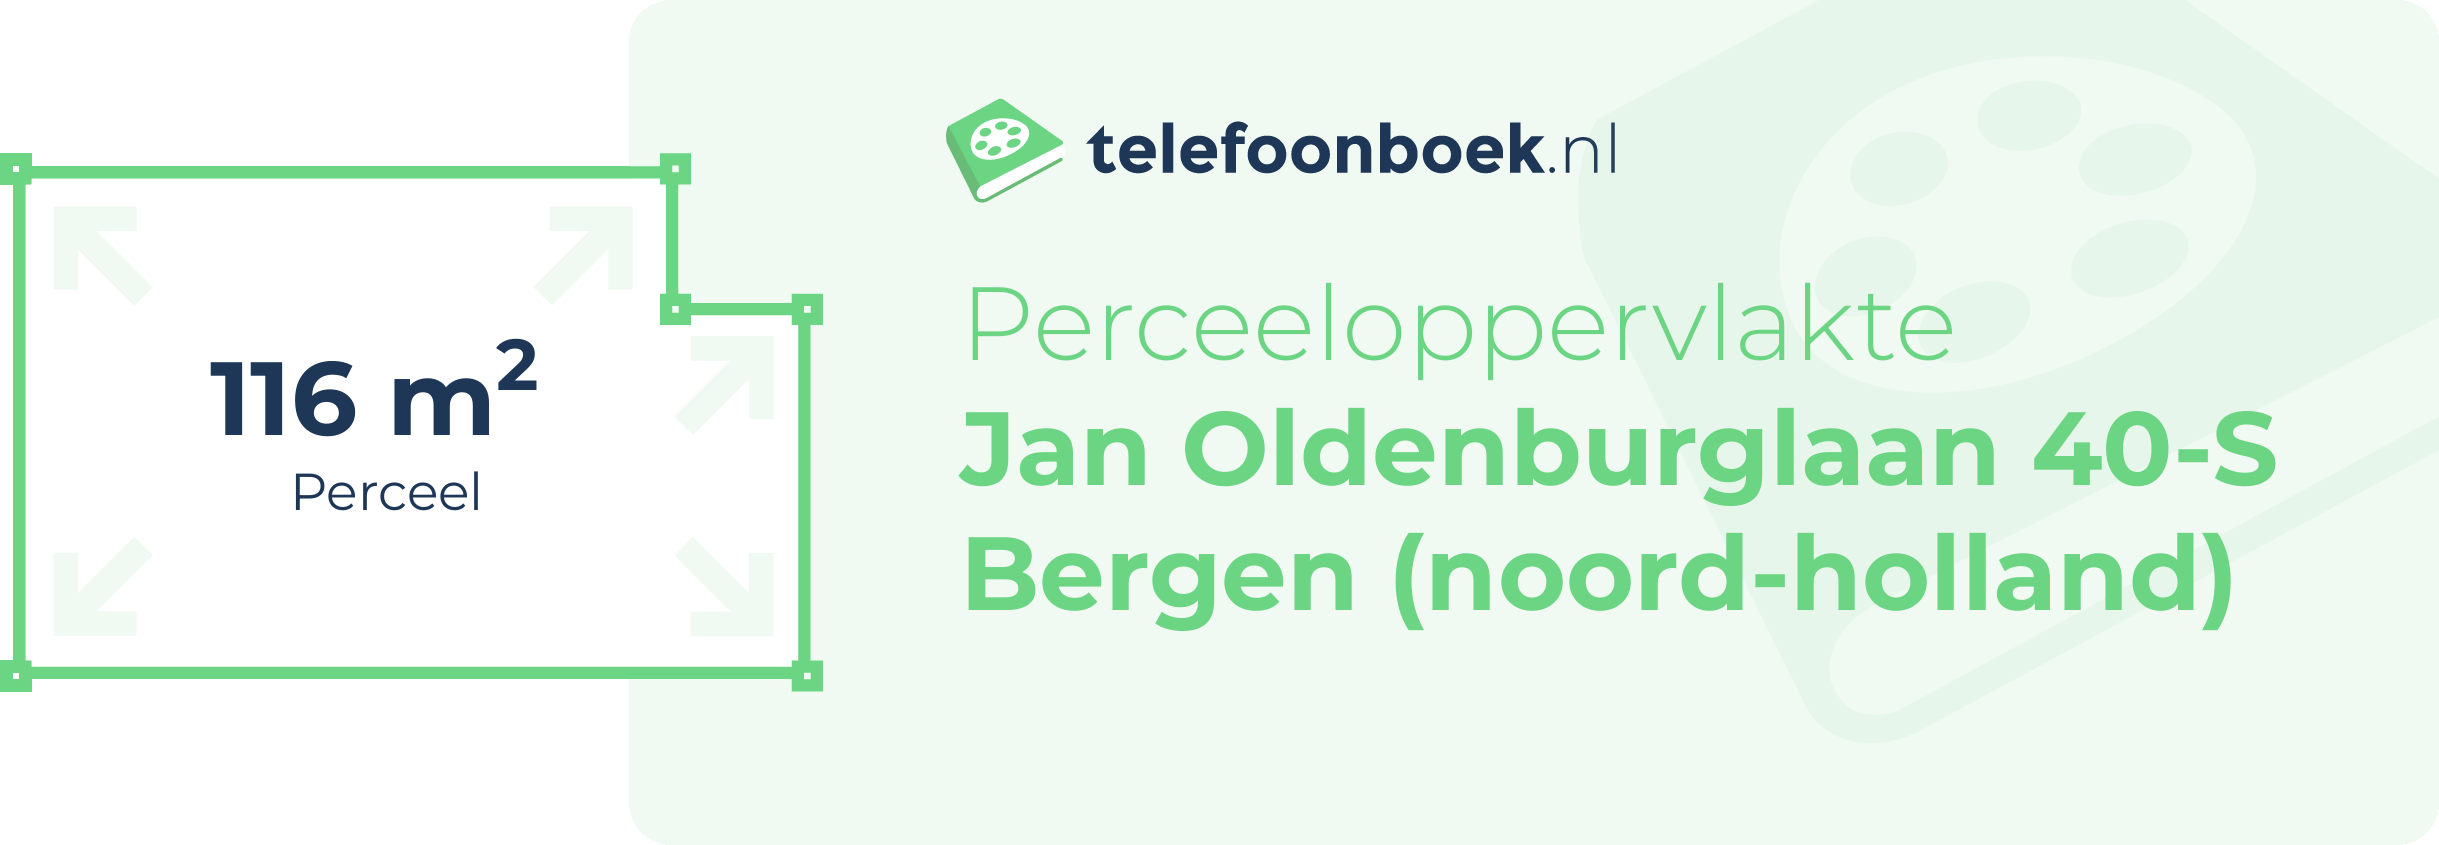 Perceeloppervlakte Jan Oldenburglaan 40-S Bergen (Noord-Holland)